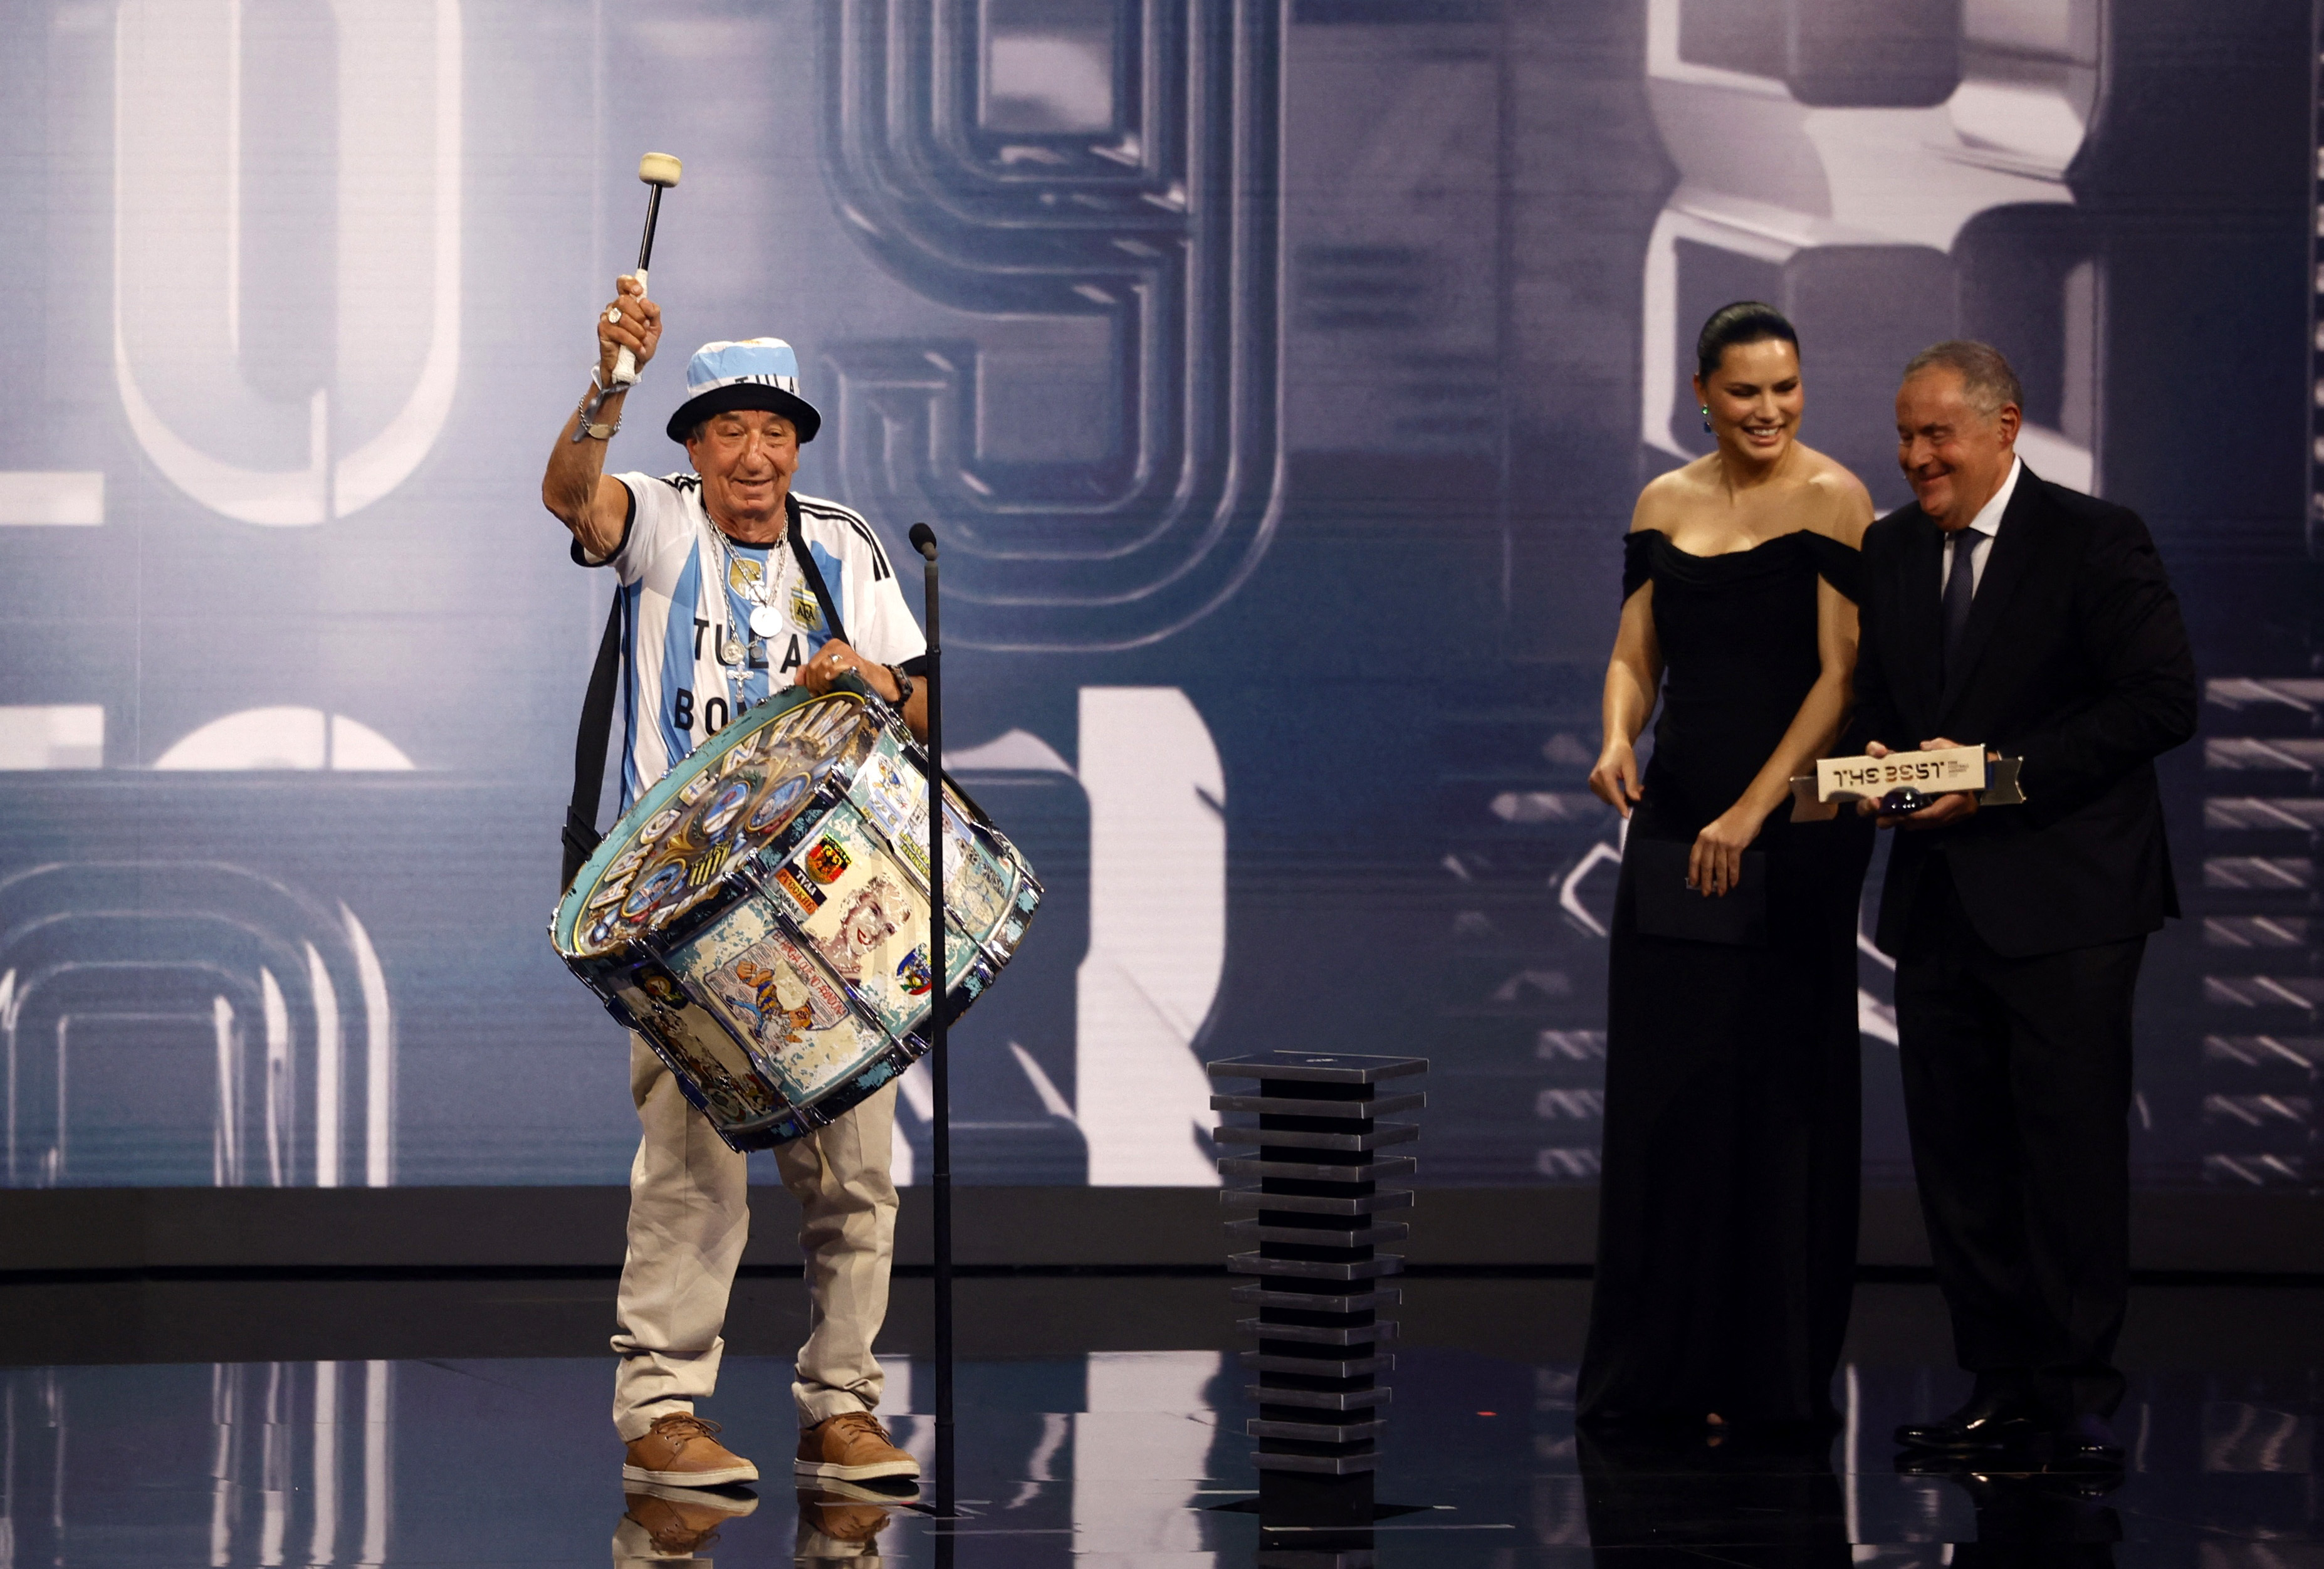 Carlos Tula Pascual recibió el premio en representación a la afición argentina, reconocida en los premios The Best, en París (REUTERS/Sarah Meyssonnier)